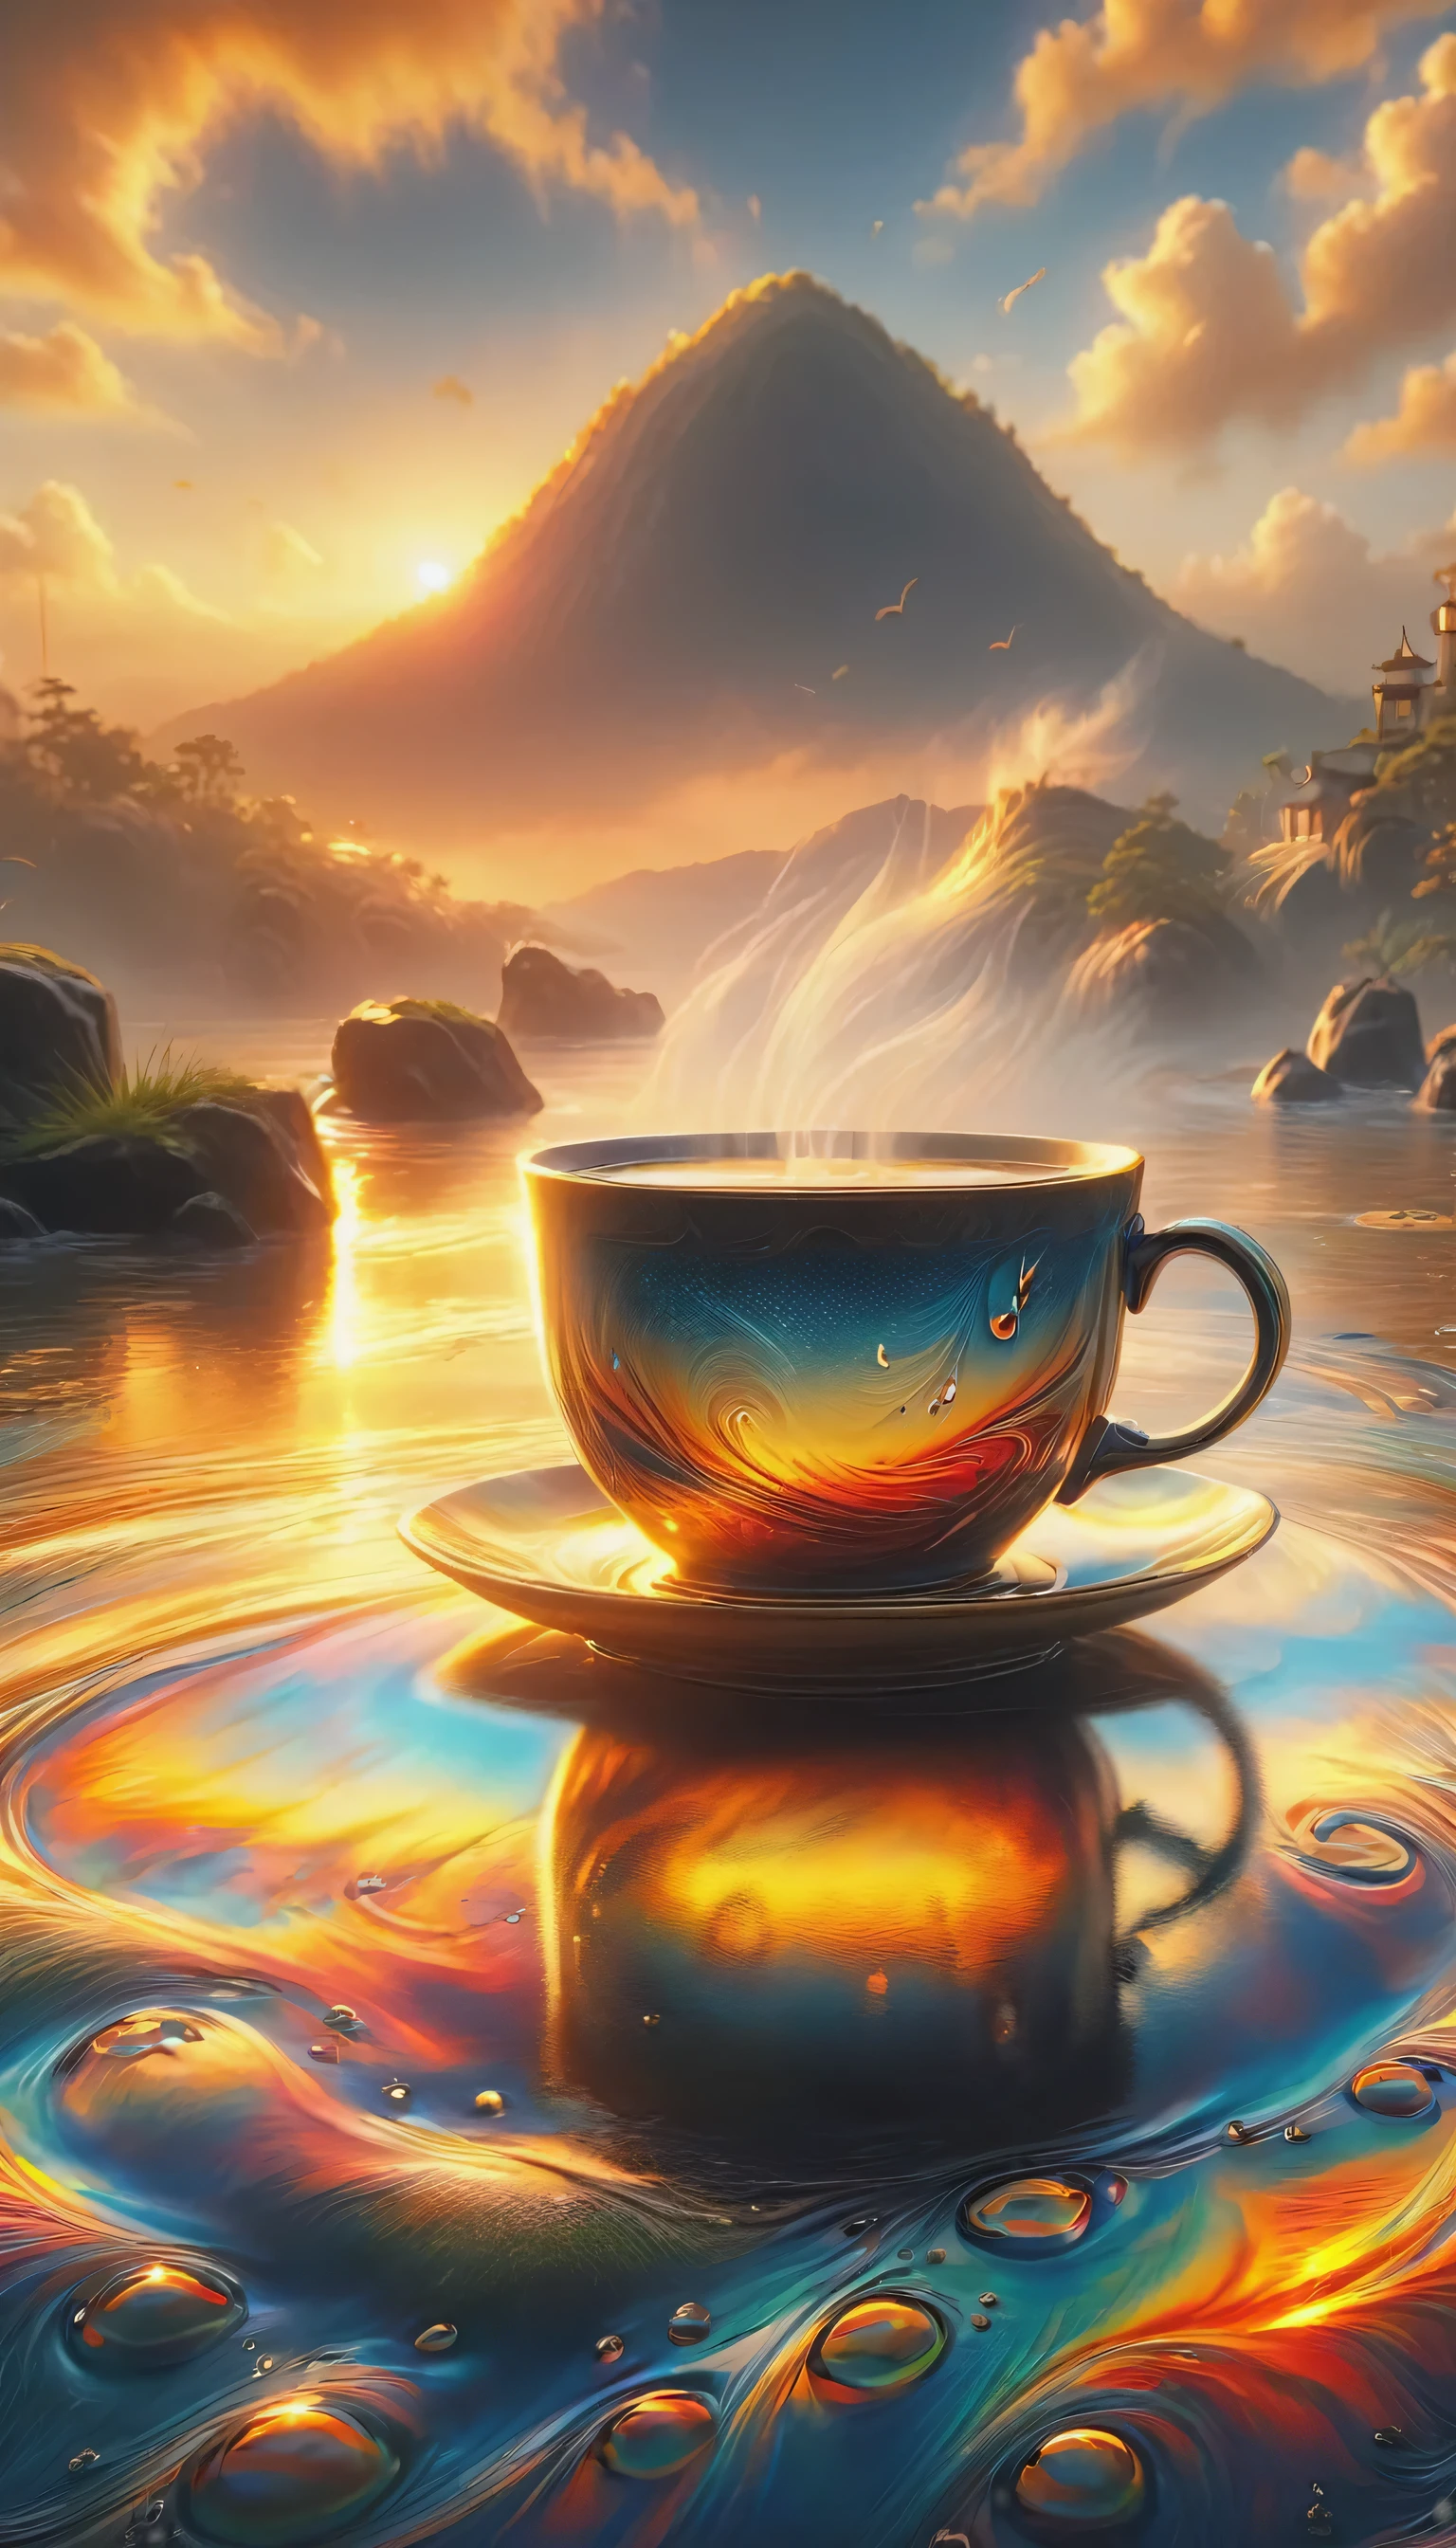 咖啡和日出/日落: 捕捉温暖, 日出或日落的柔和光线照亮你的咖啡杯，营造宁静祥和的形象. 雾气从杯中升起. 8千